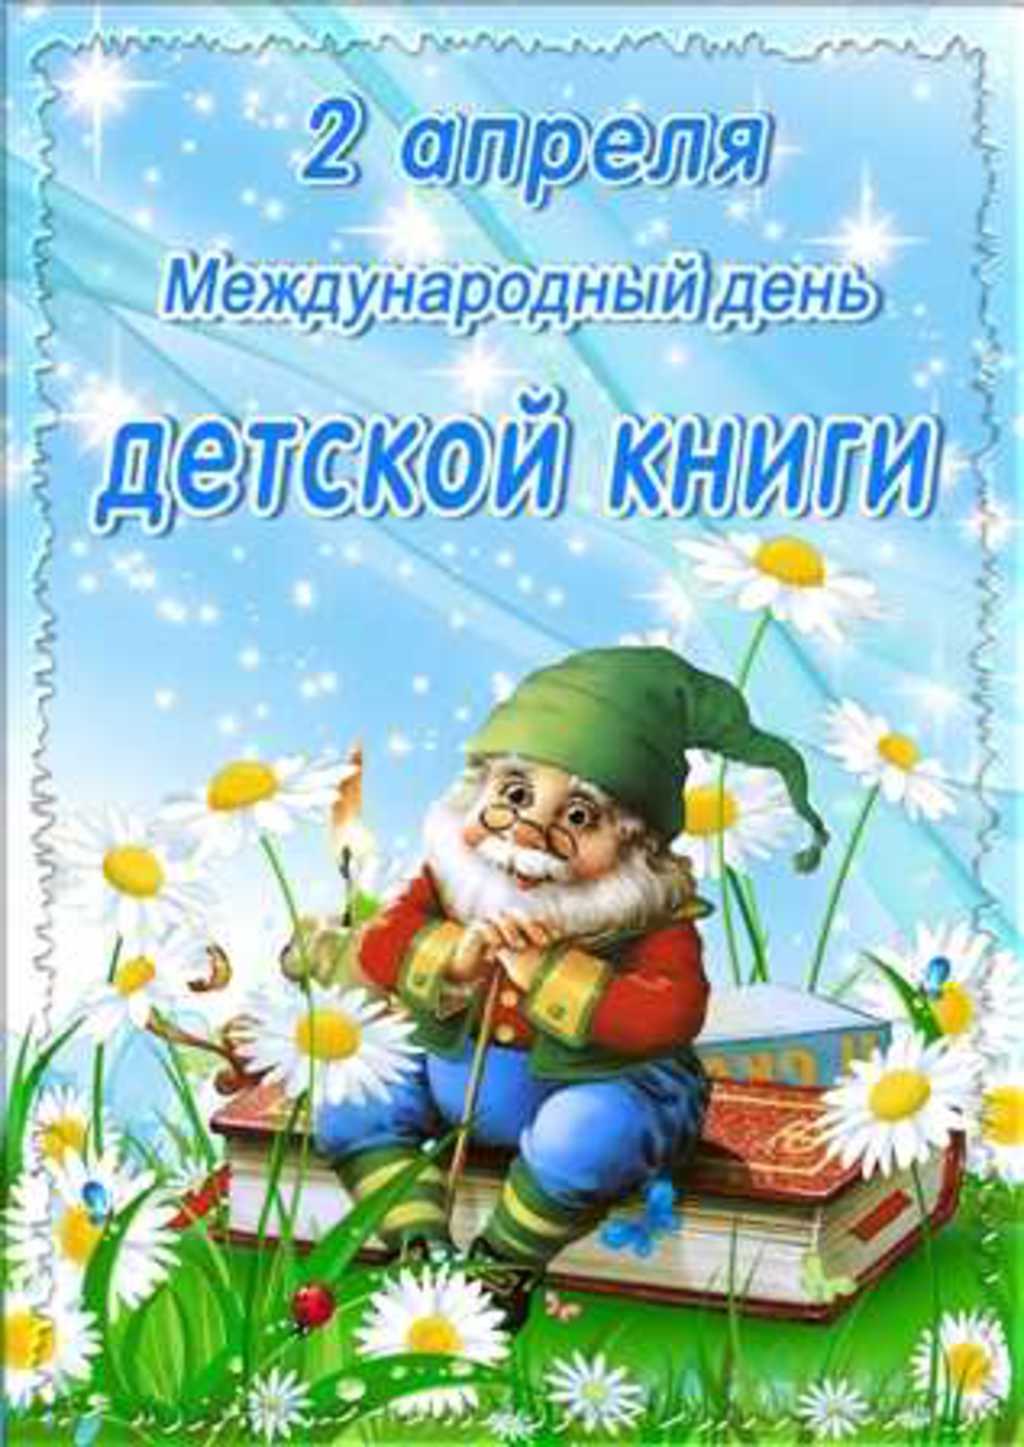 Новые Добрые  календарь праздников всемирный день детской книги шурину